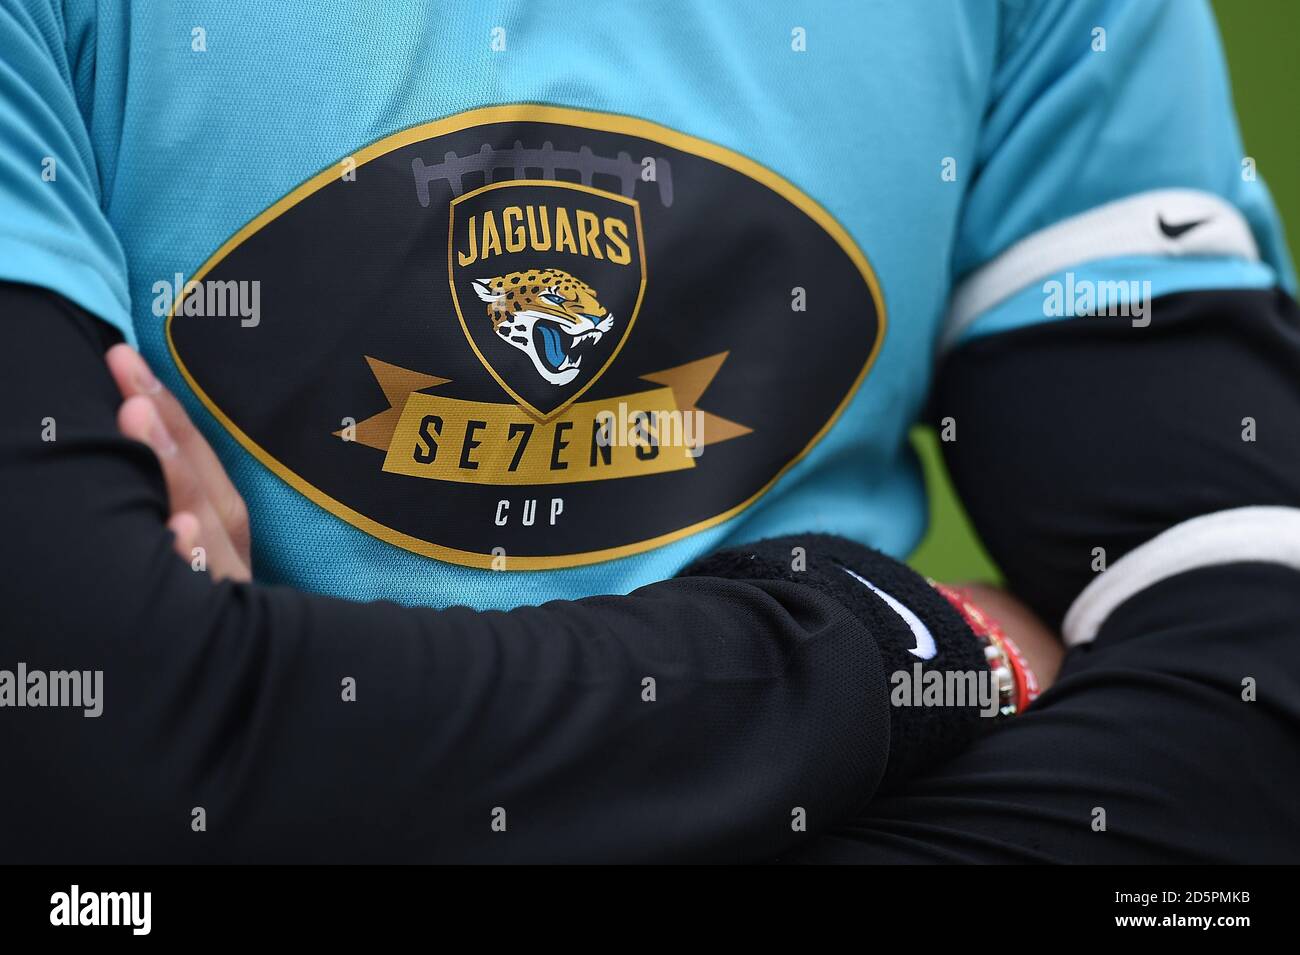 Jacksonville Jaguars Branding auf einem Spielertrikot während des Jaguars Se7ens Cup im Craven Cottage, London. Stockfoto